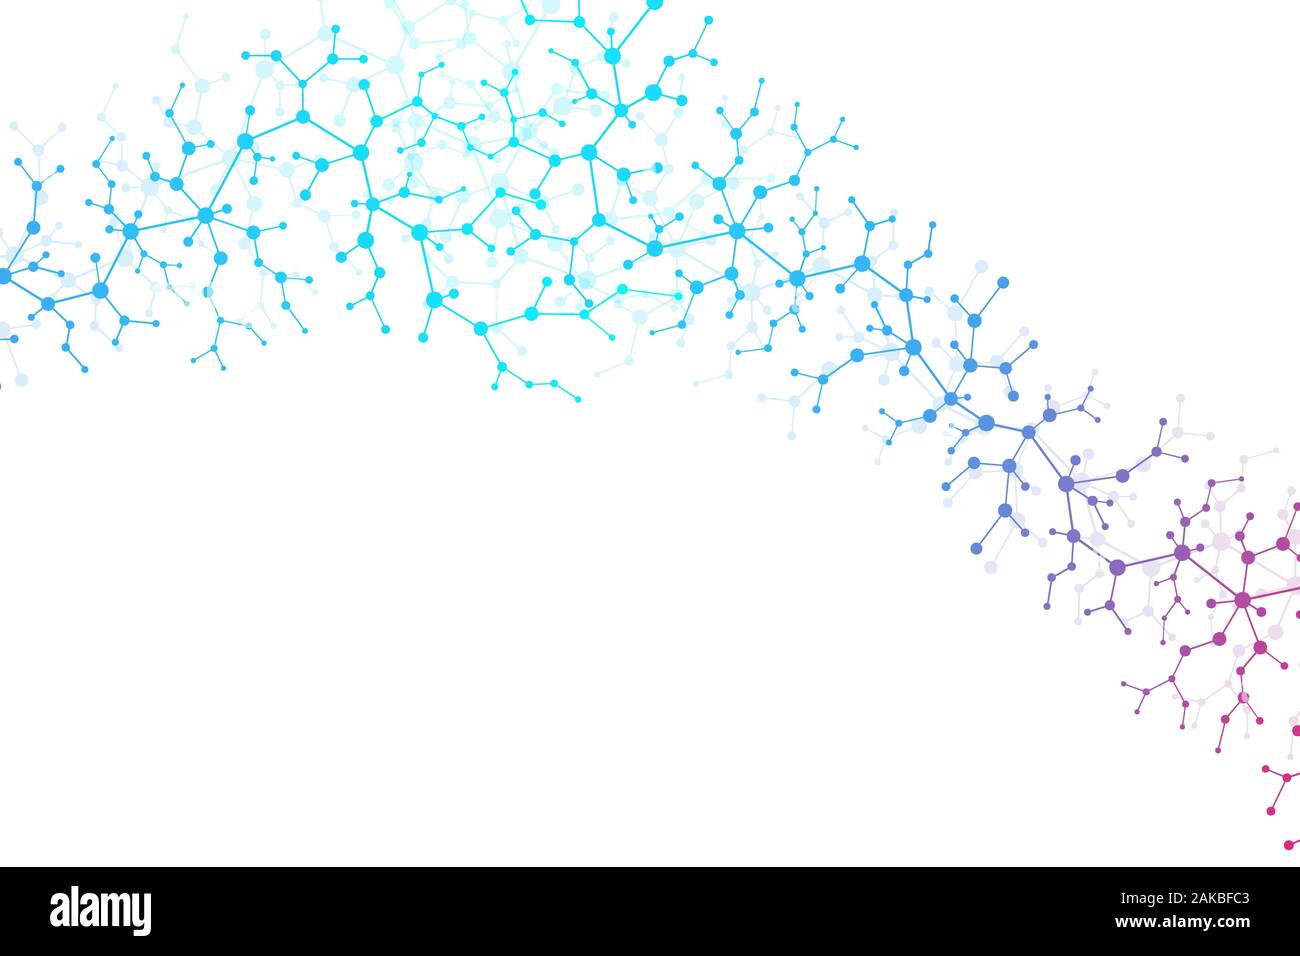 Wissenschaftliche Molekül Hintergrund DNA-Doppelhelix Vector Illustration mit geringer Tiefenschärfe. Geheimnisvolle Tapeten oder Banner mit einem DNA-Moleküle Stock Vektor